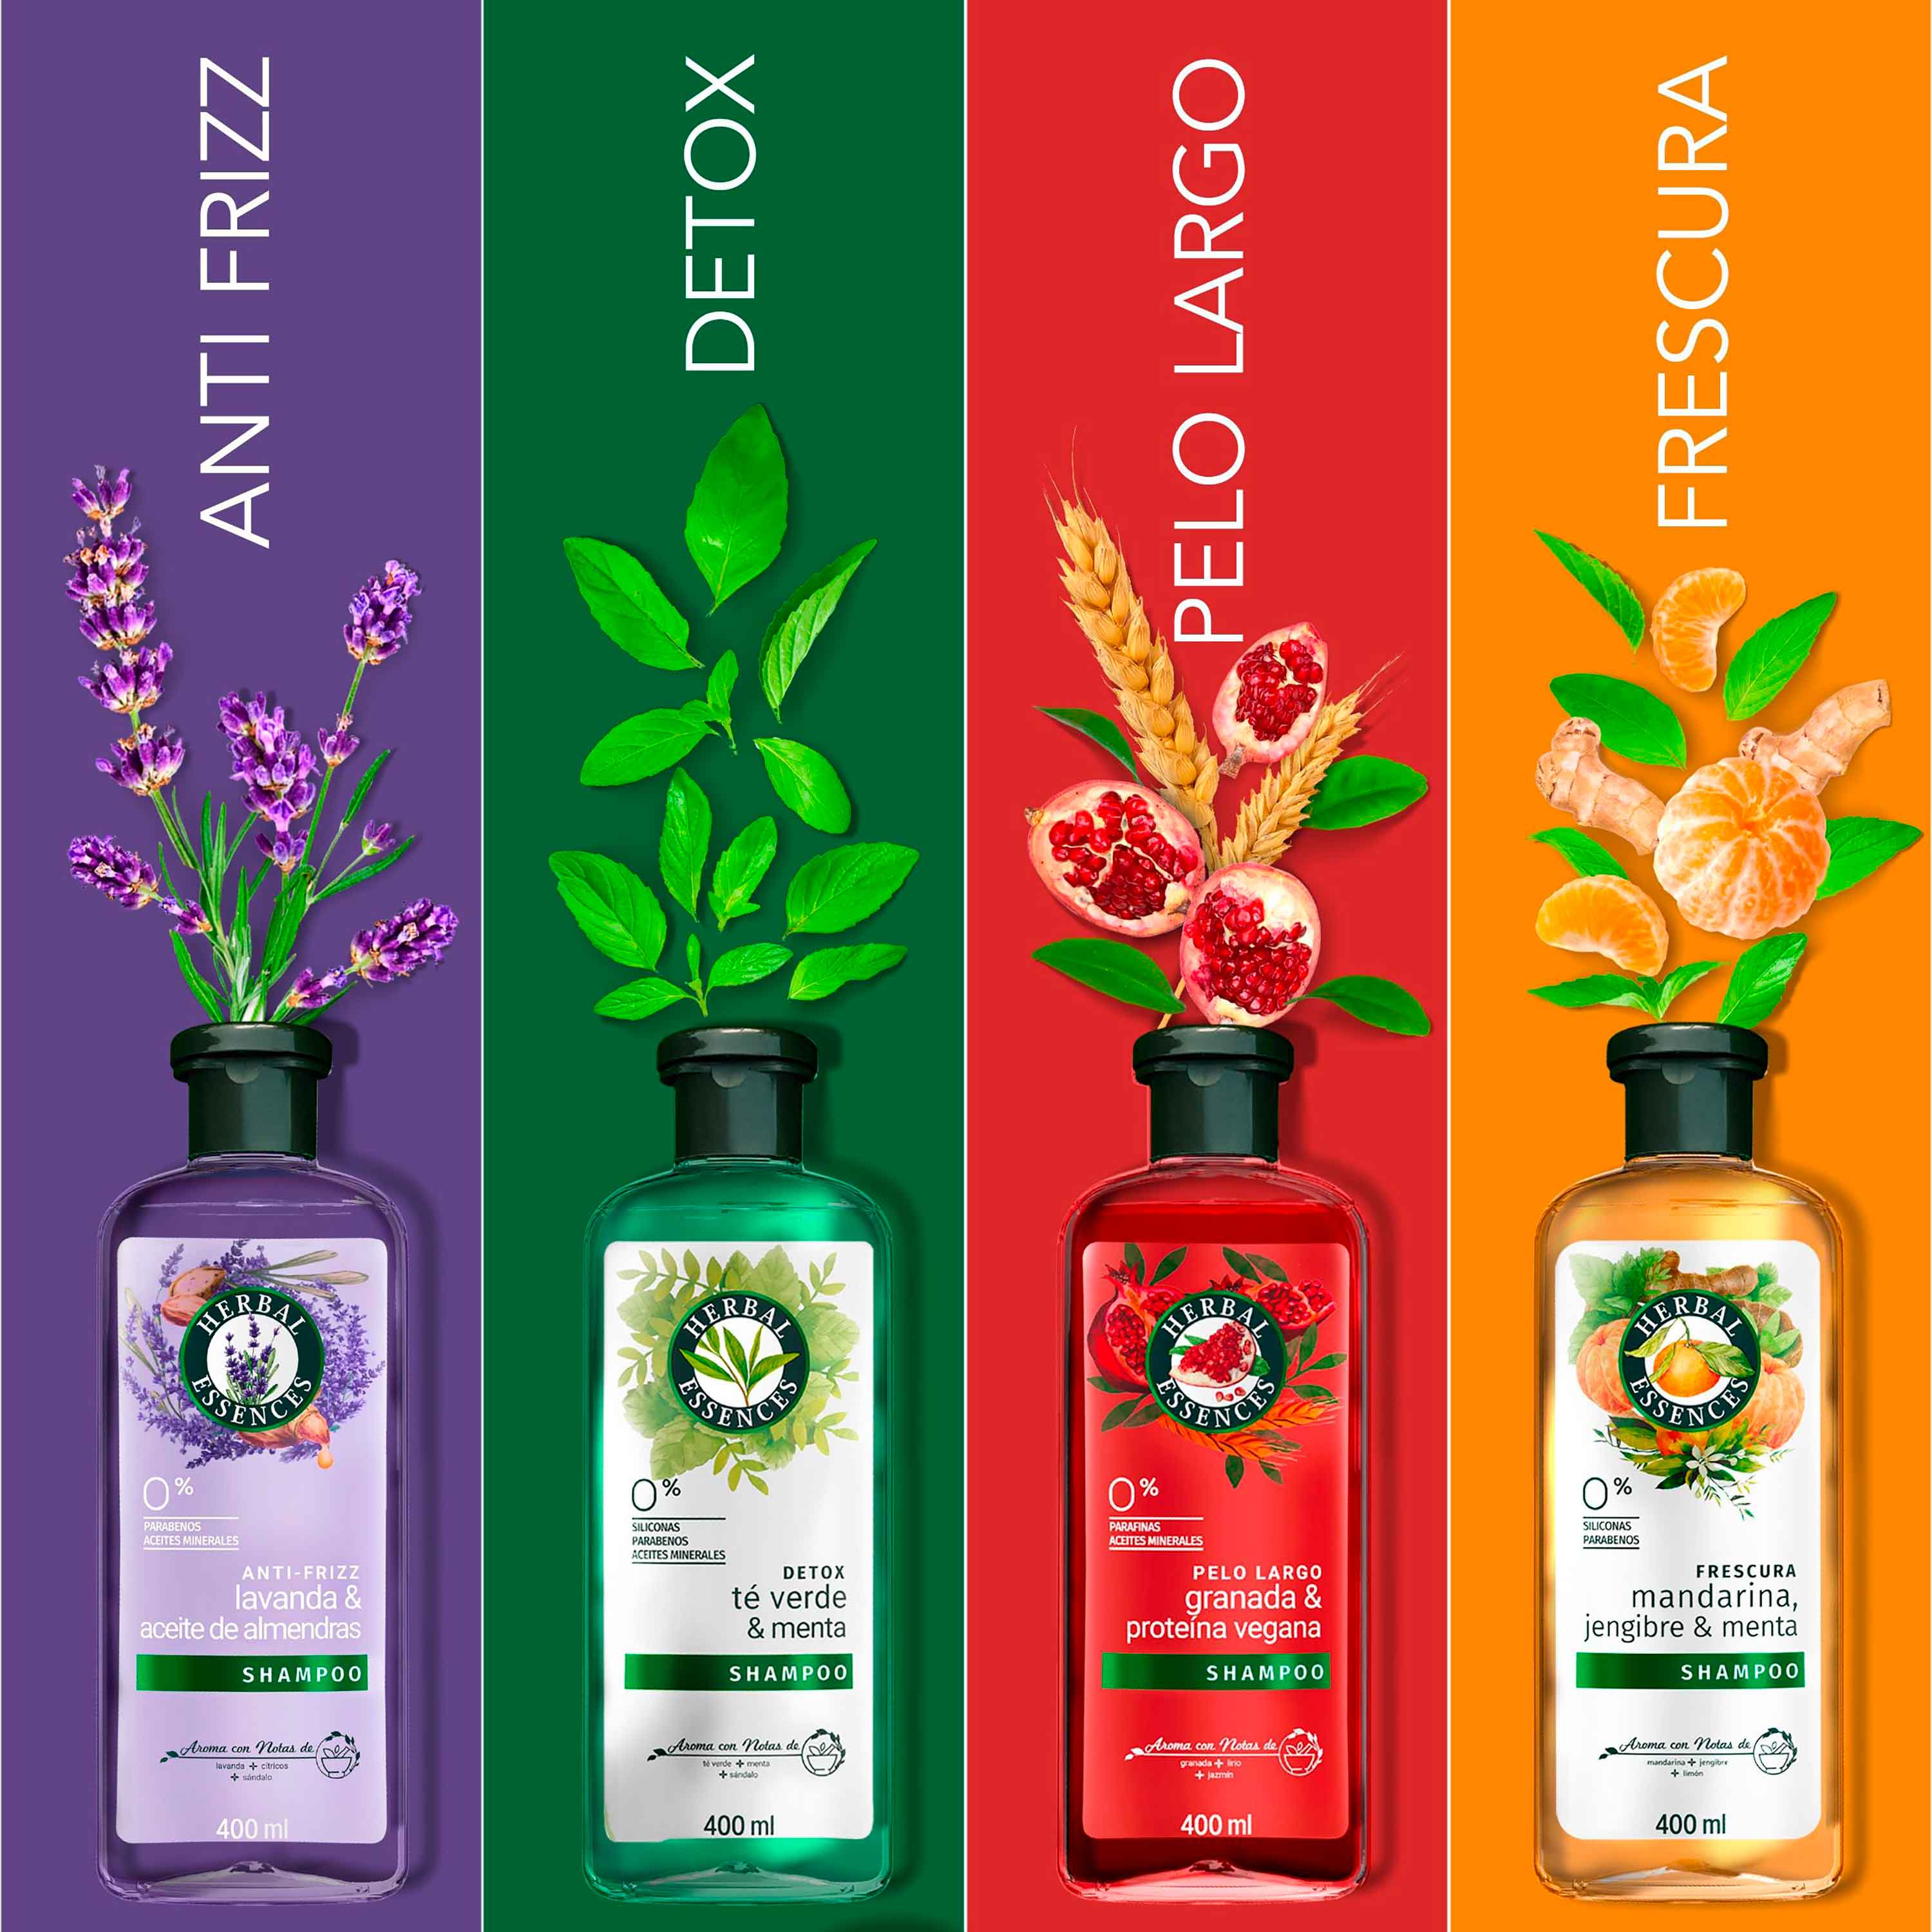 Shampoo Herbal Essences Pelo Largo Granada & Proteína Vegana 400ml